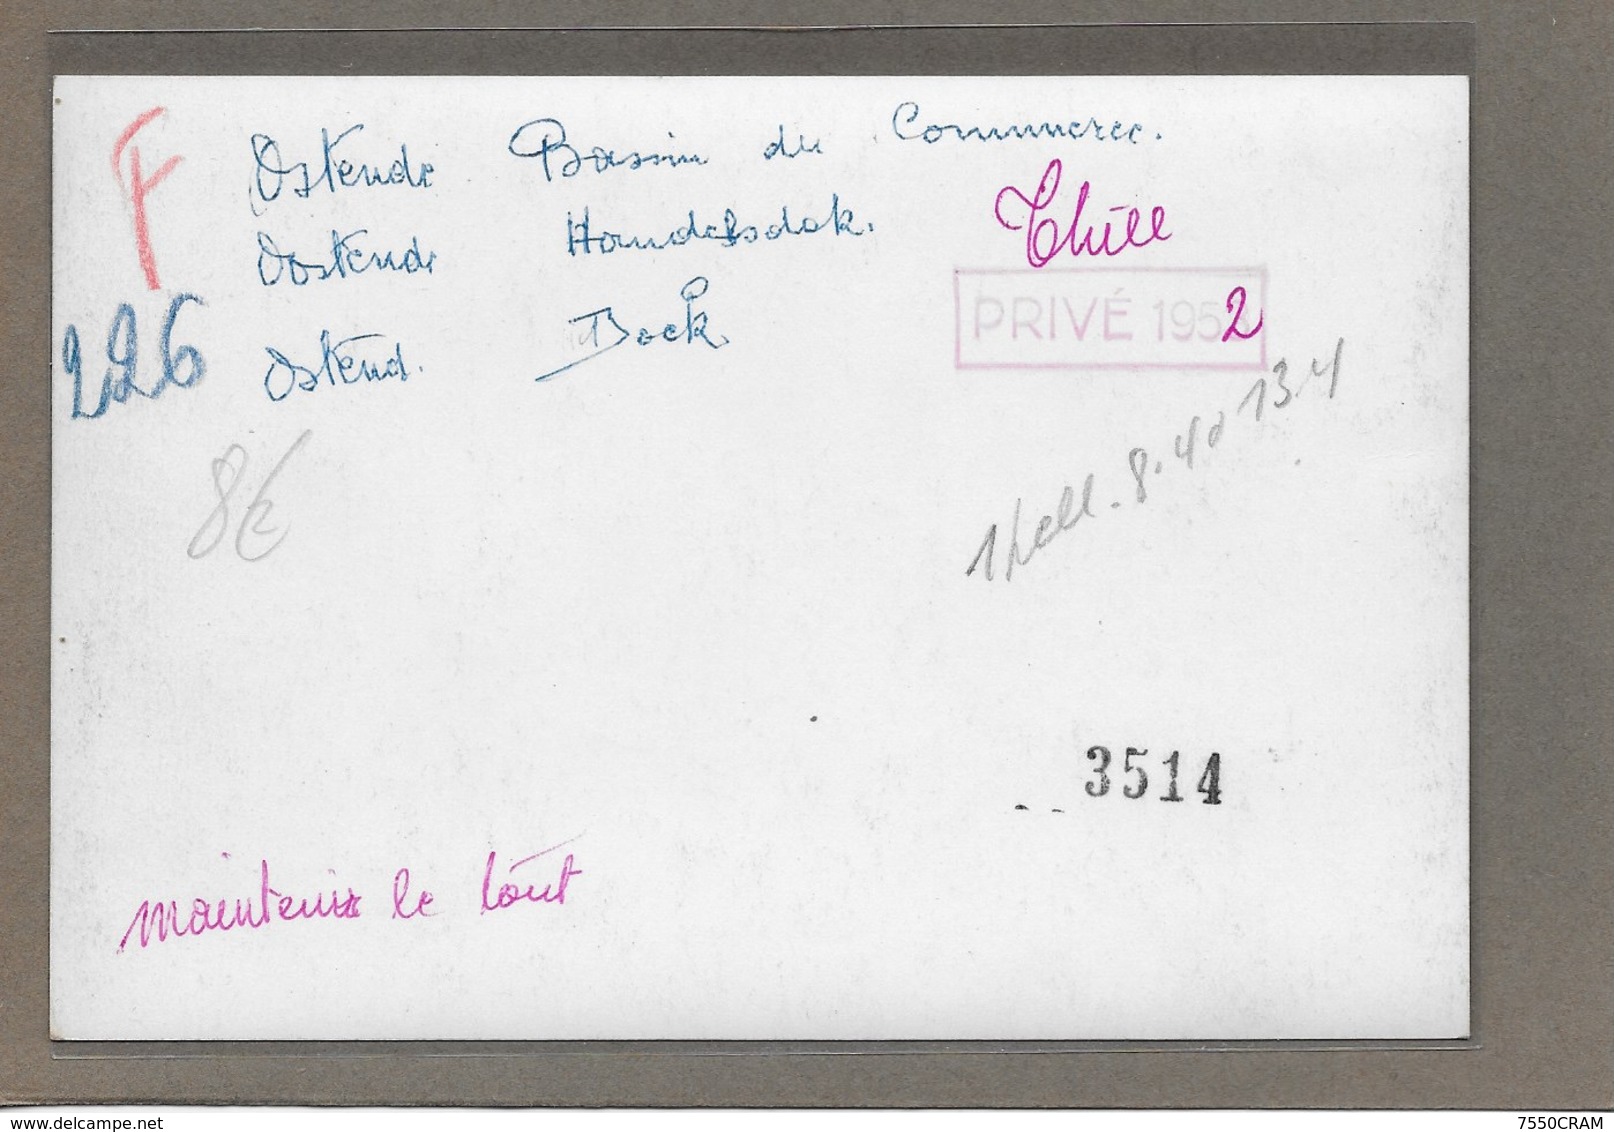 OOSTENDE : -1952-HANDELDOK-GEEN POSTKAART-MAAR MOEDERFOTO VAN 15,50CM OP 10,50CM-MAISON ERN,THILL - Oostende